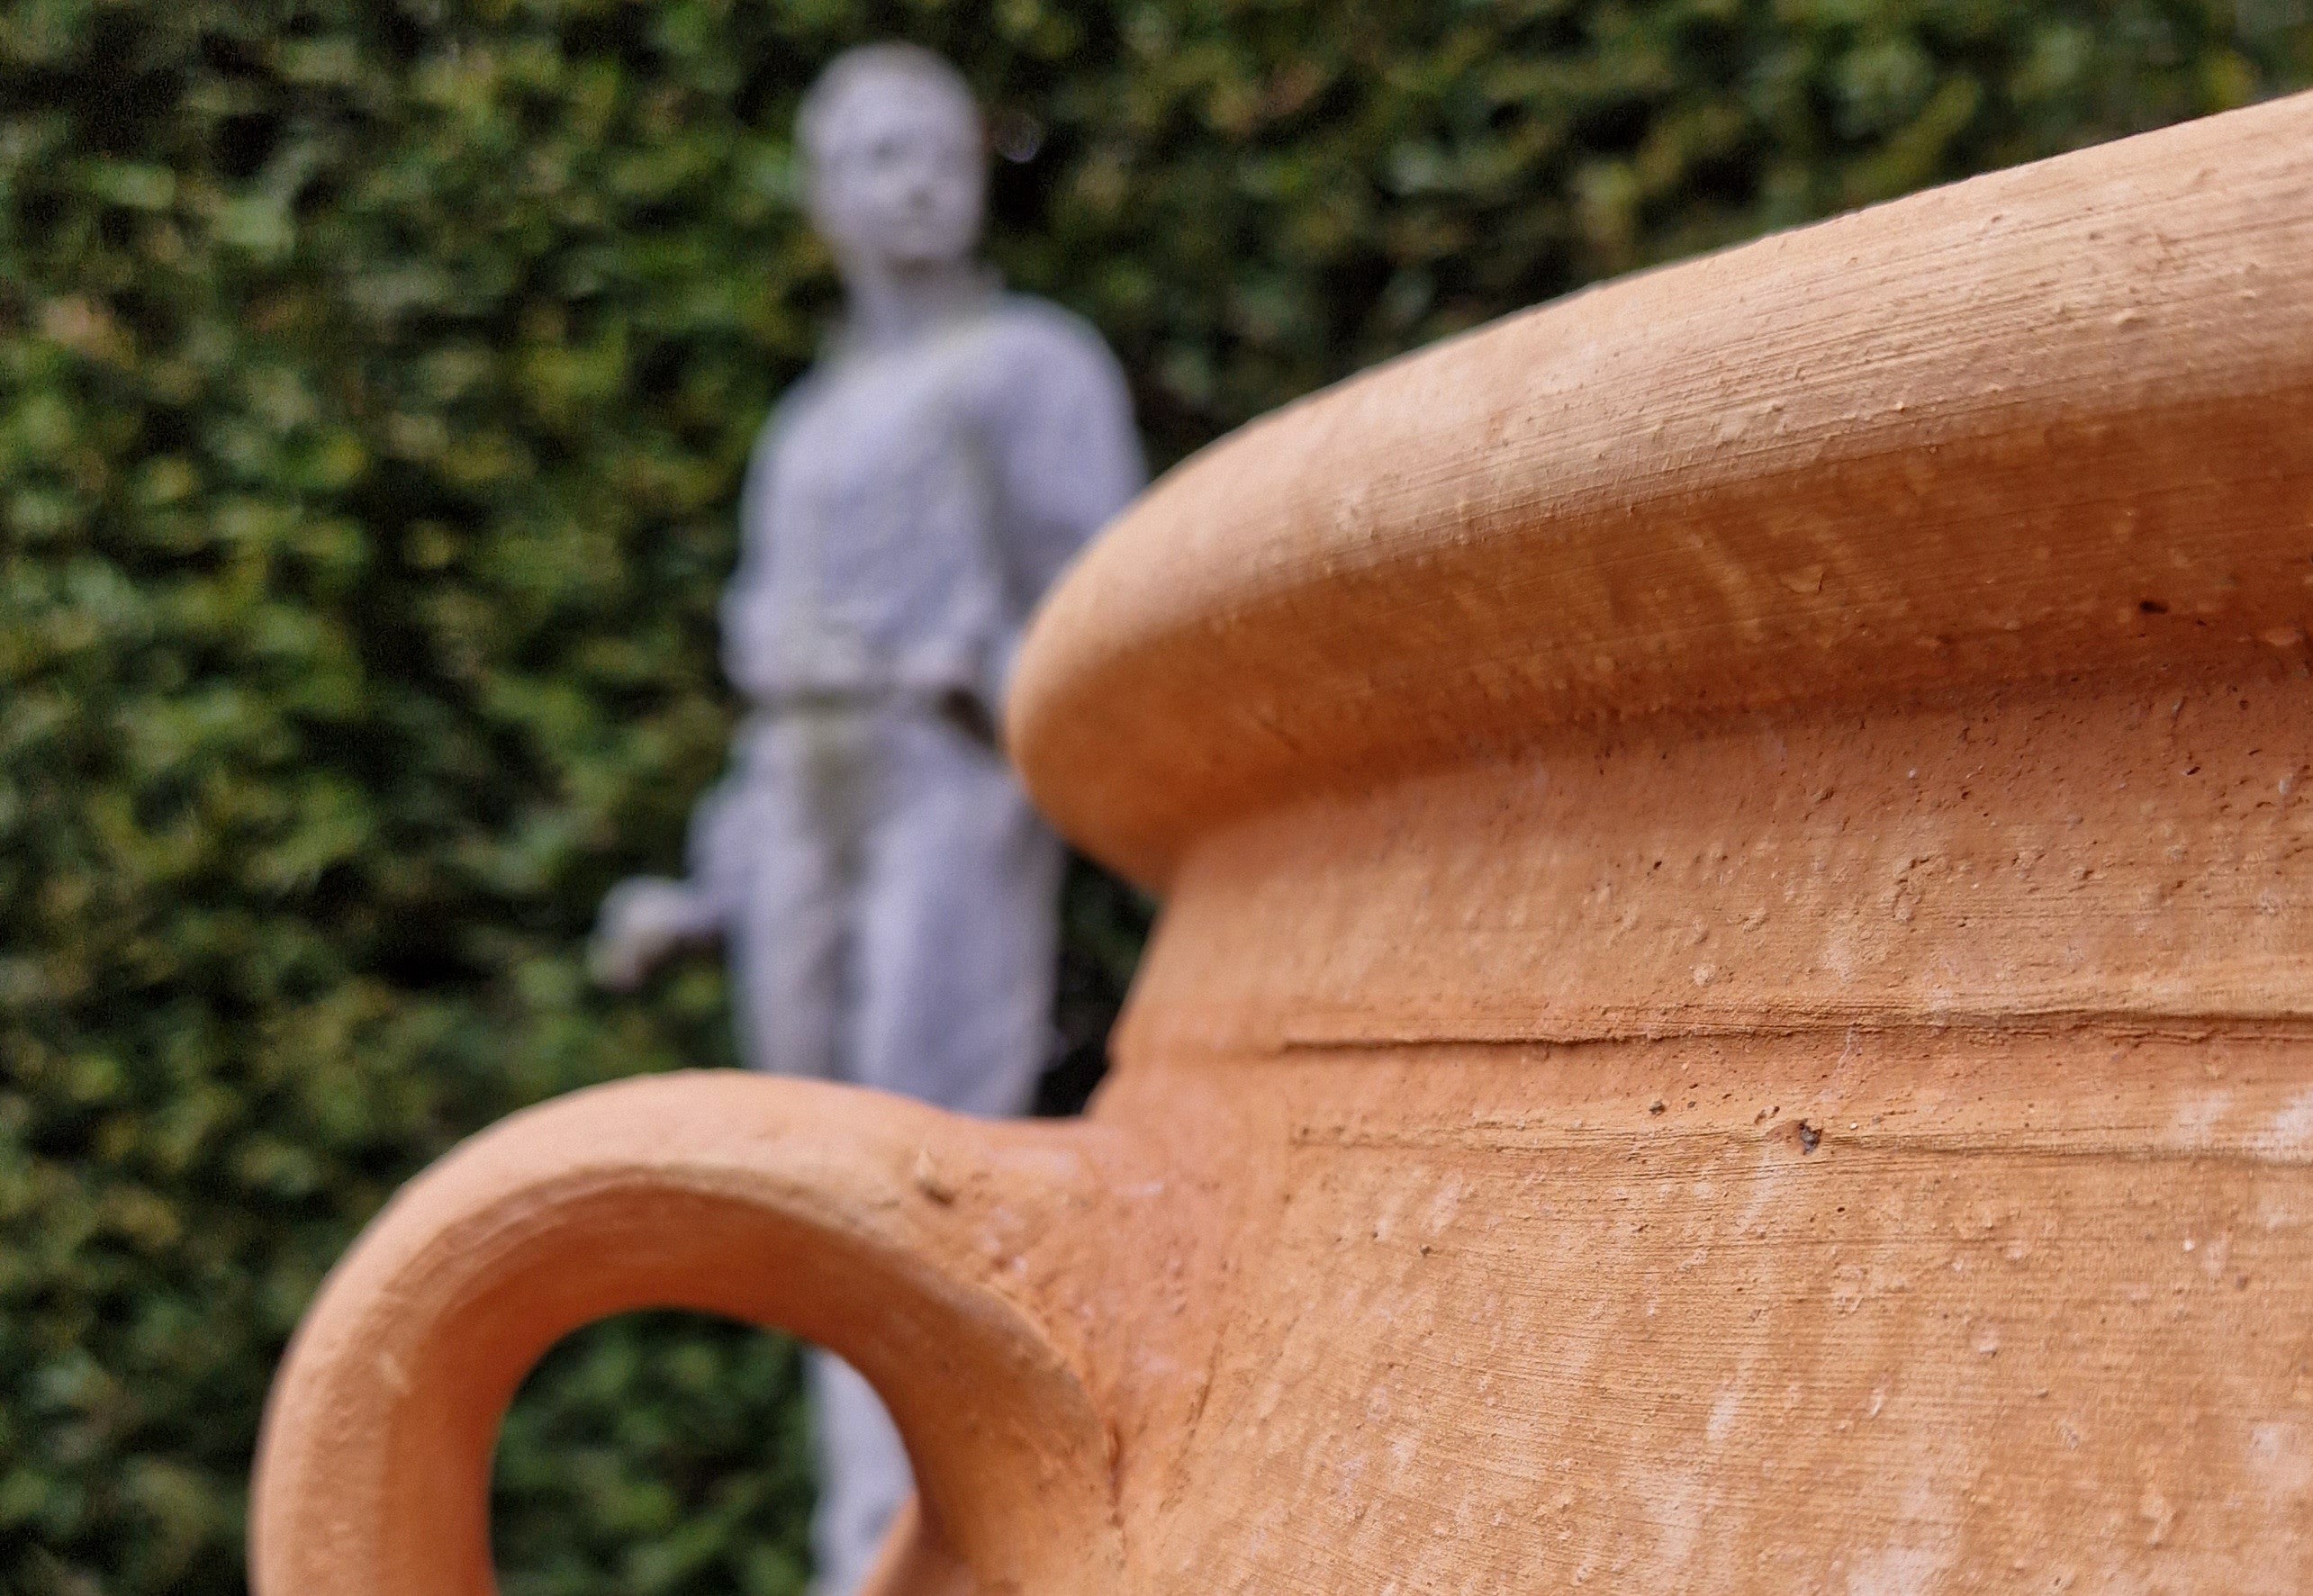 Cretan Terracotta Pots